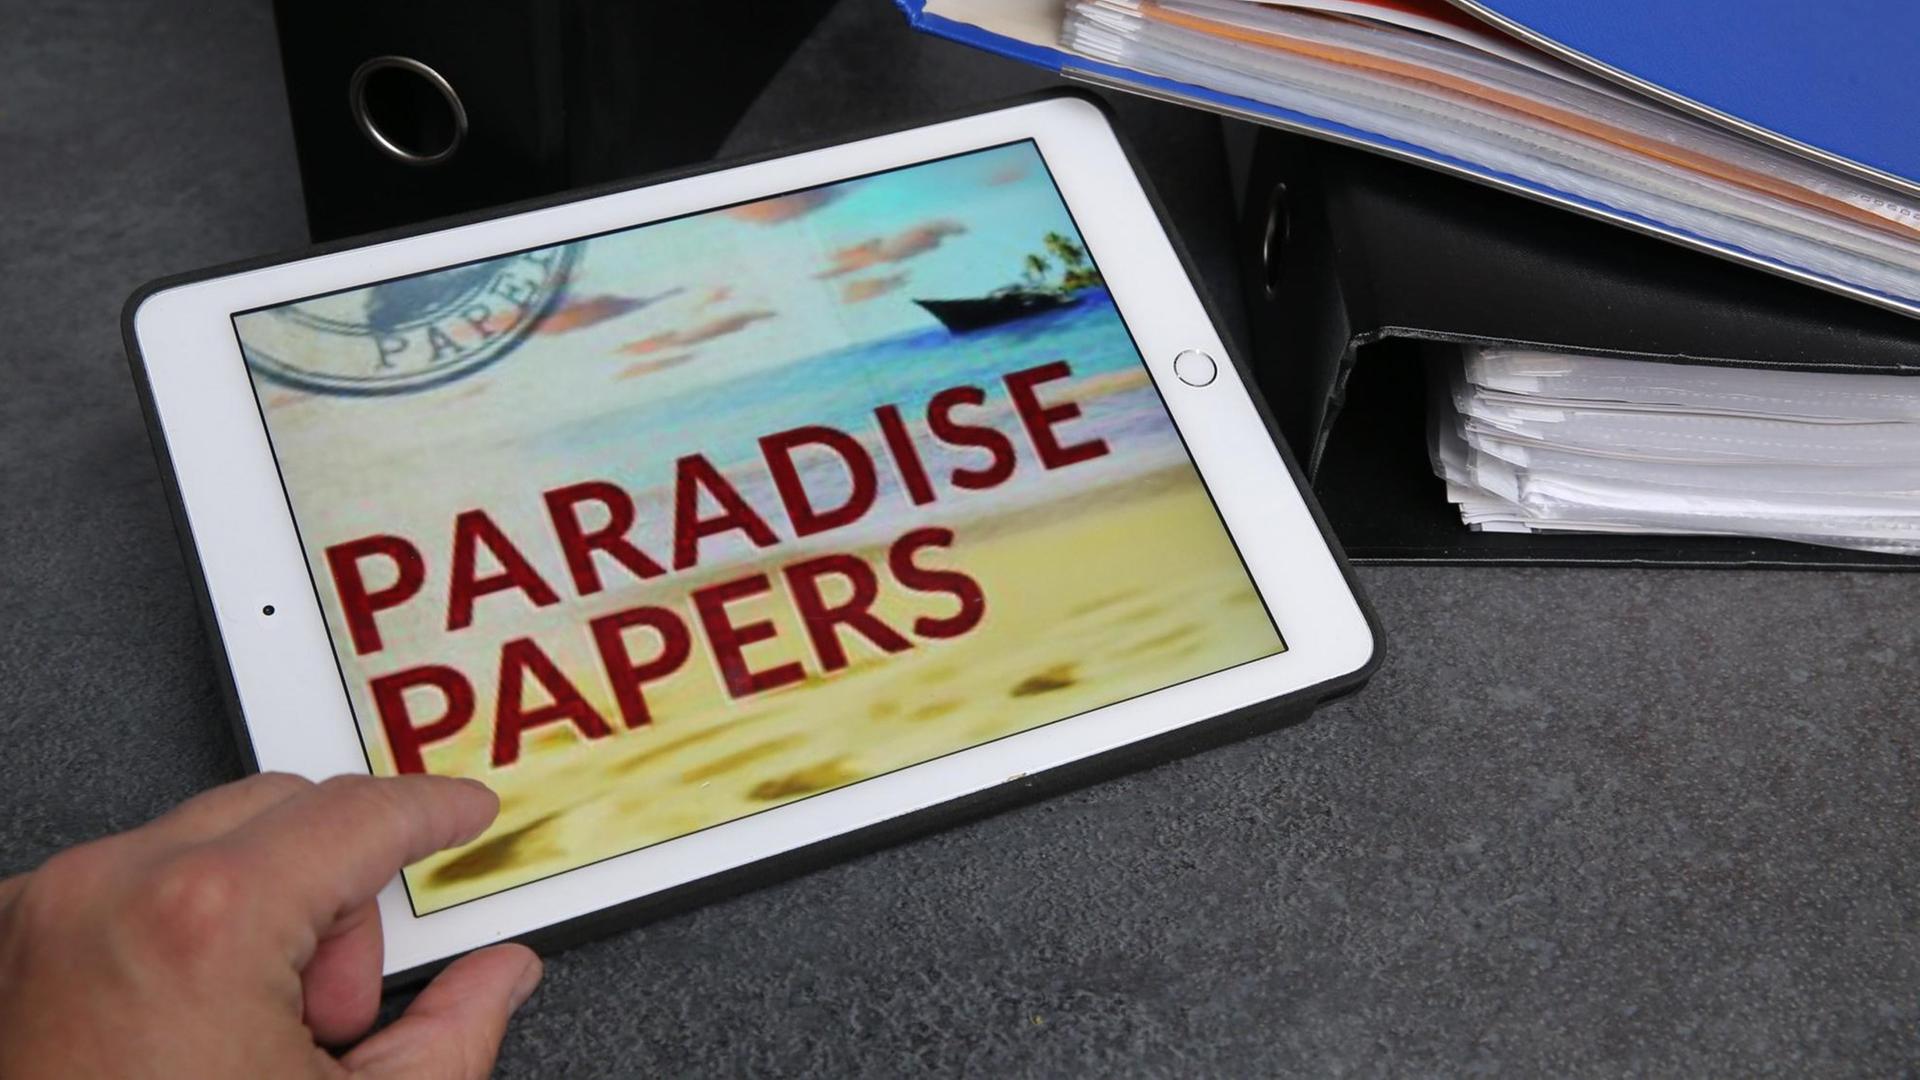 Ein weisses Tablet mit der Aufschrift "Paradise Papers"